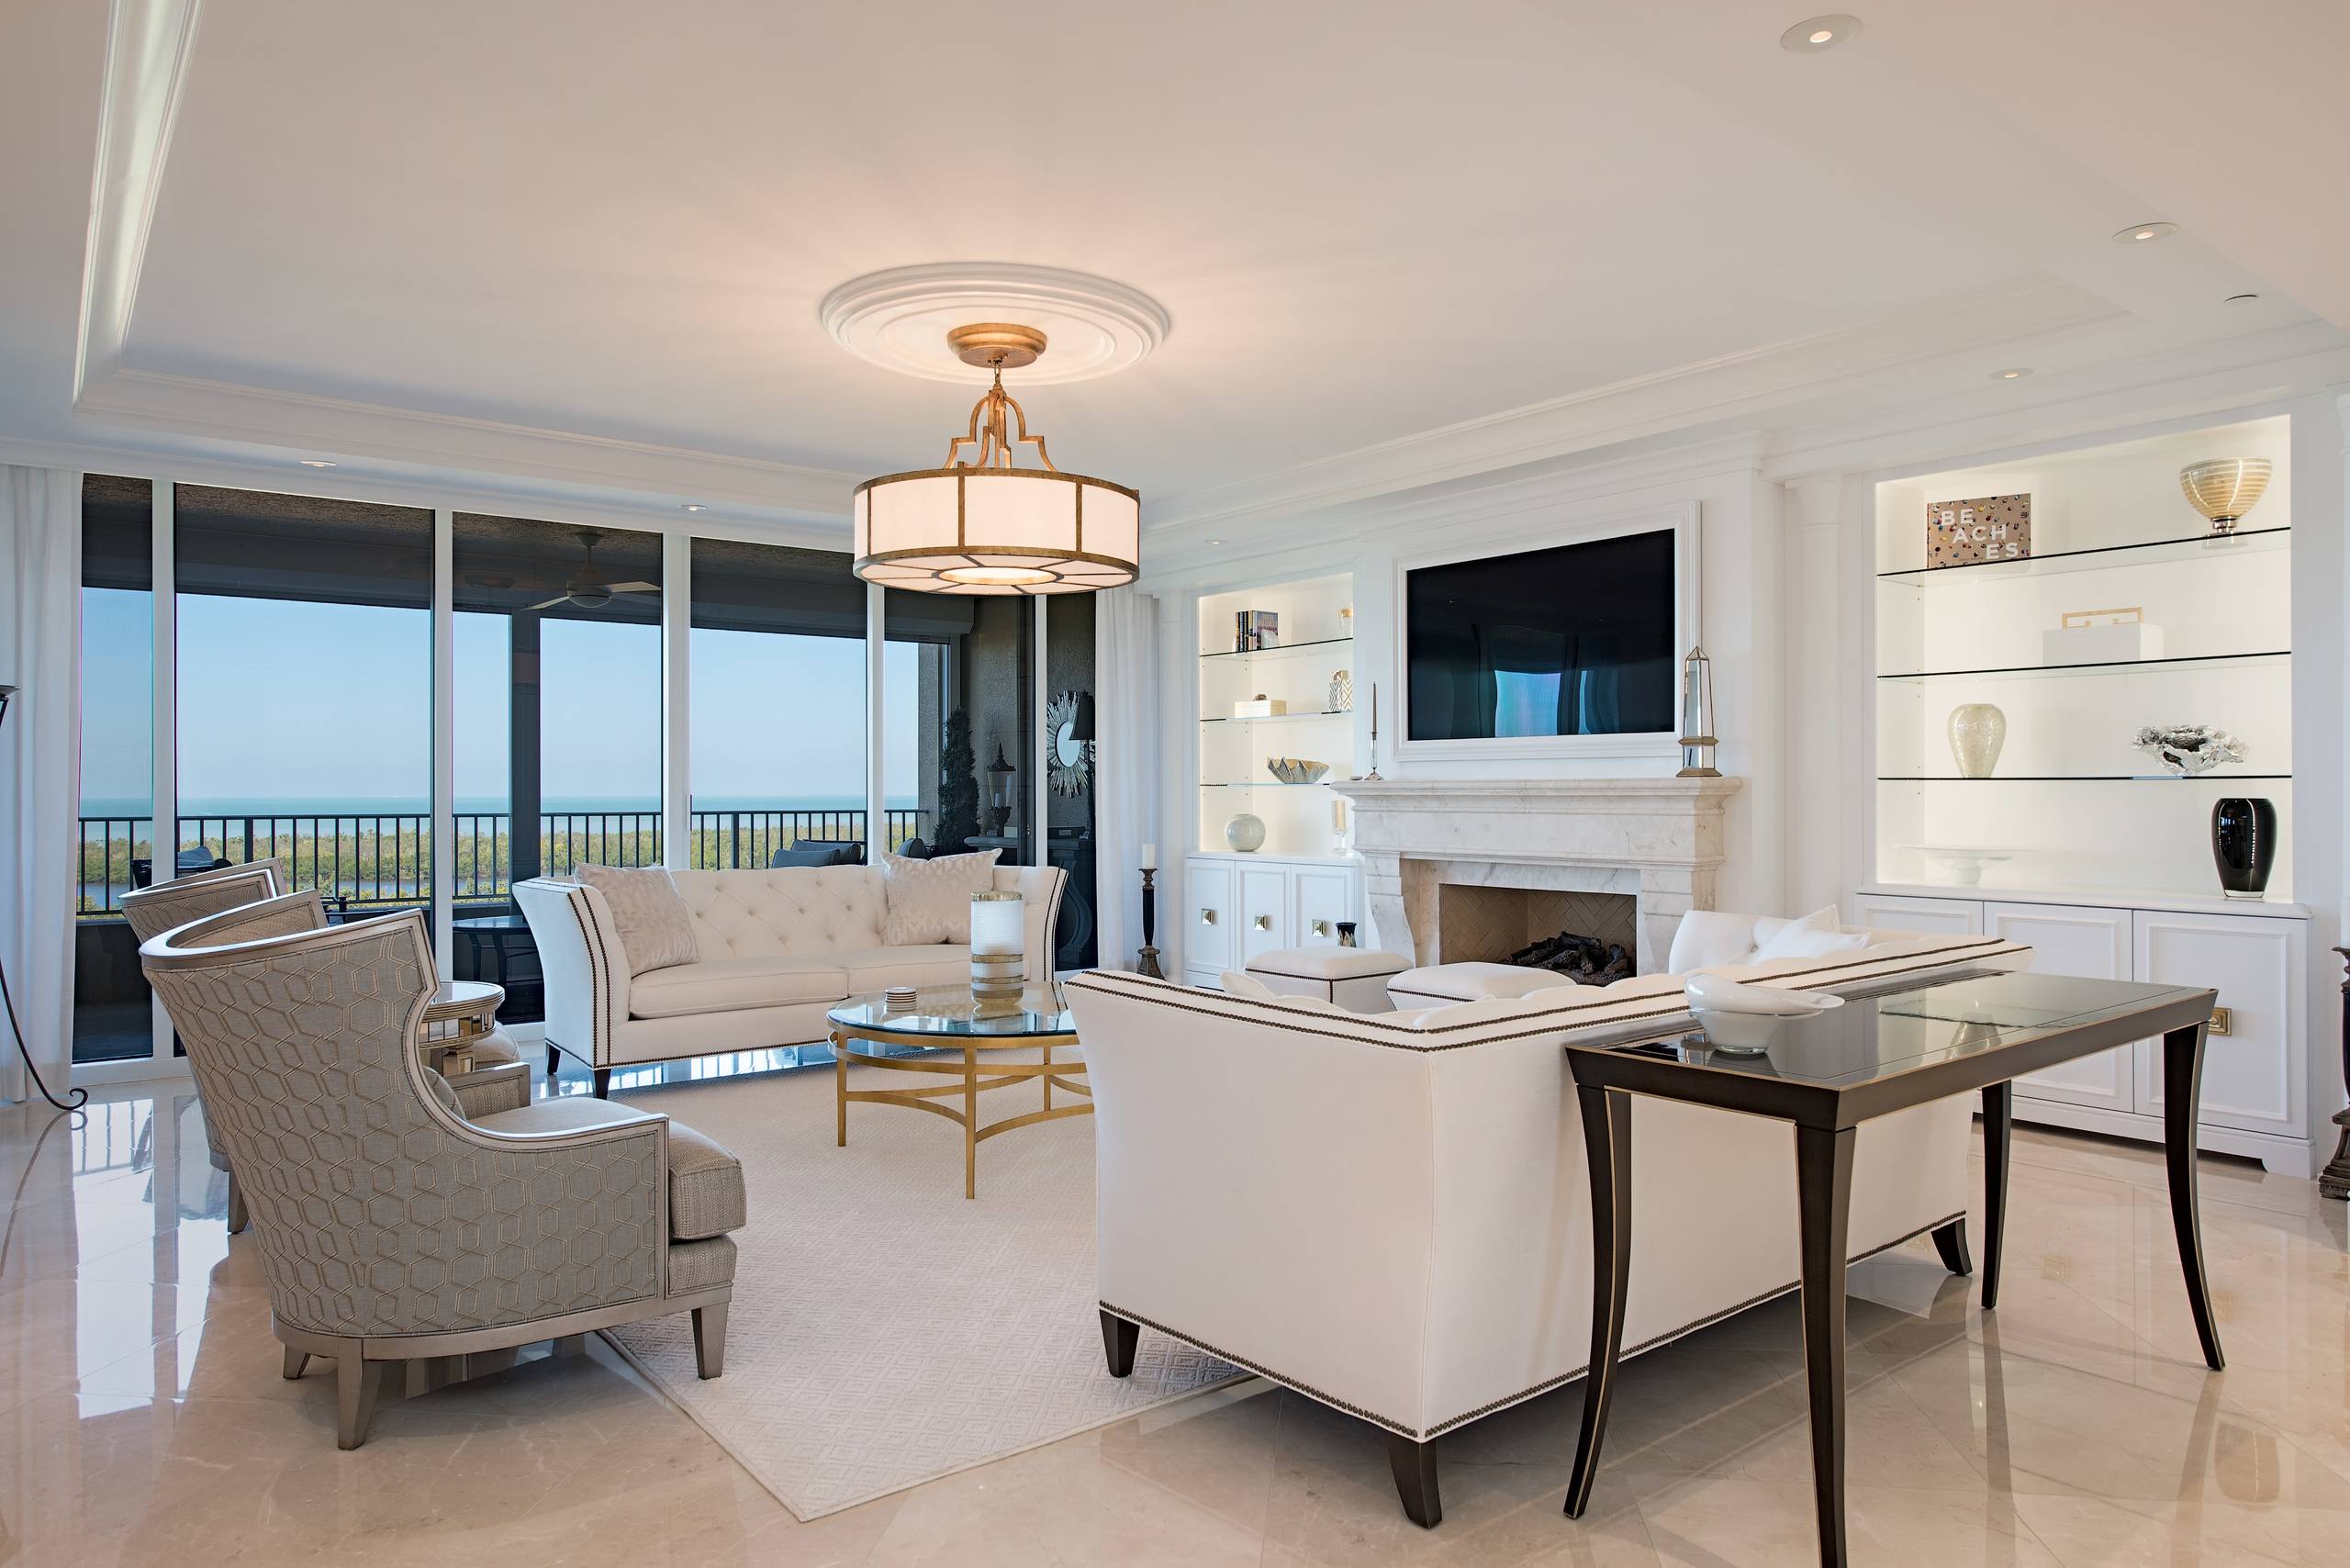 Certified Luxury Builders-41 West-Naples-Pelican Bay-Cap Ferrat-High-rise Condo